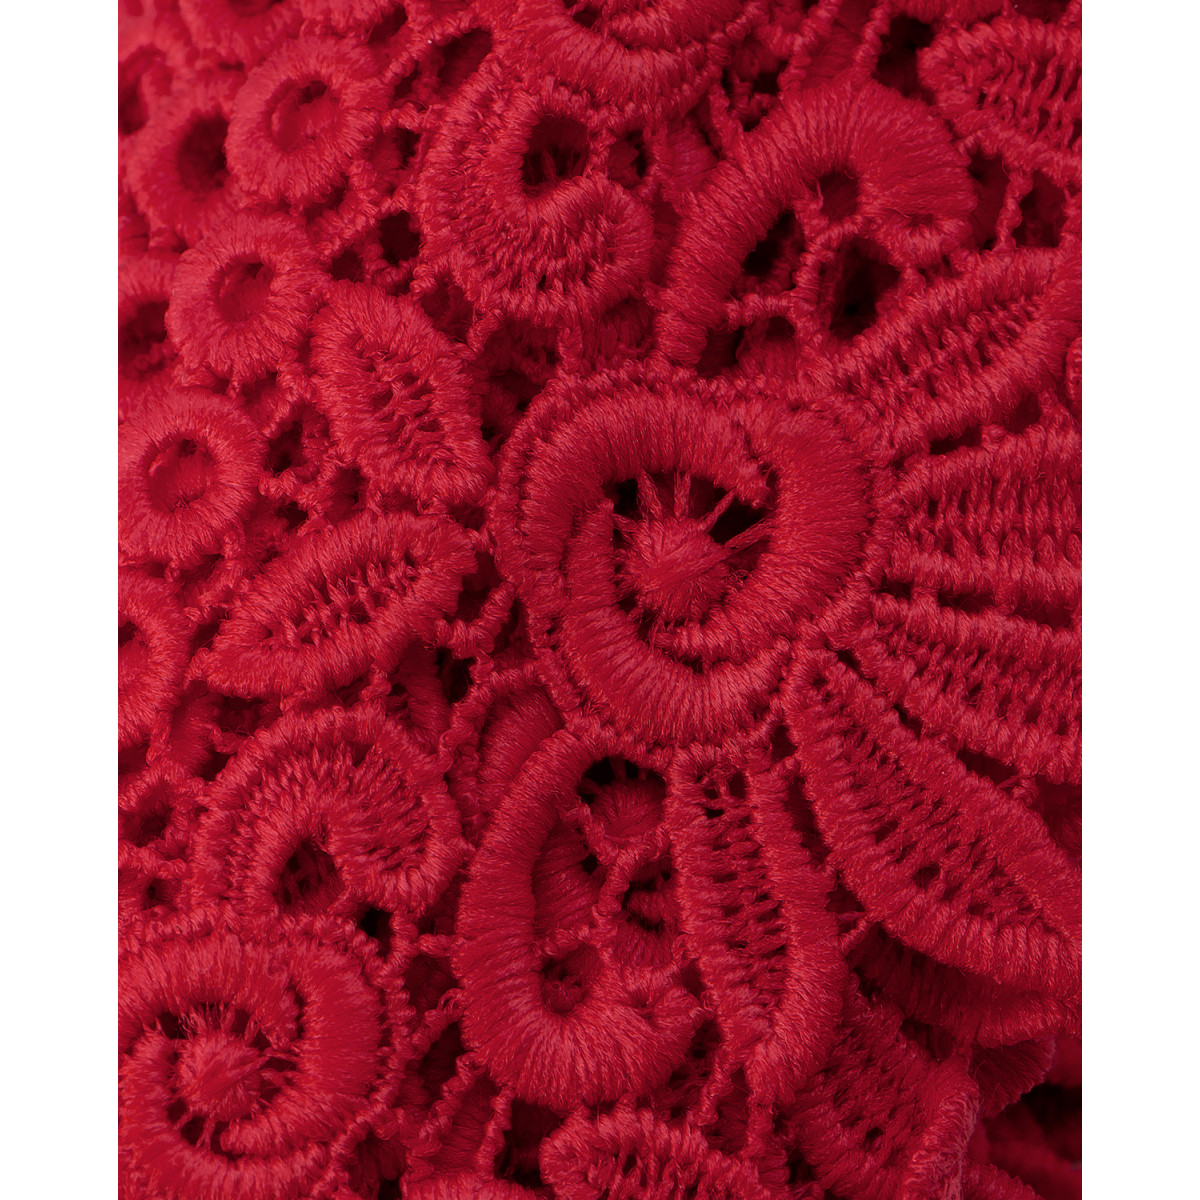 Кружево плетеное ш.5 см красный 1 метр (арт. КП-335-5-37885.005)